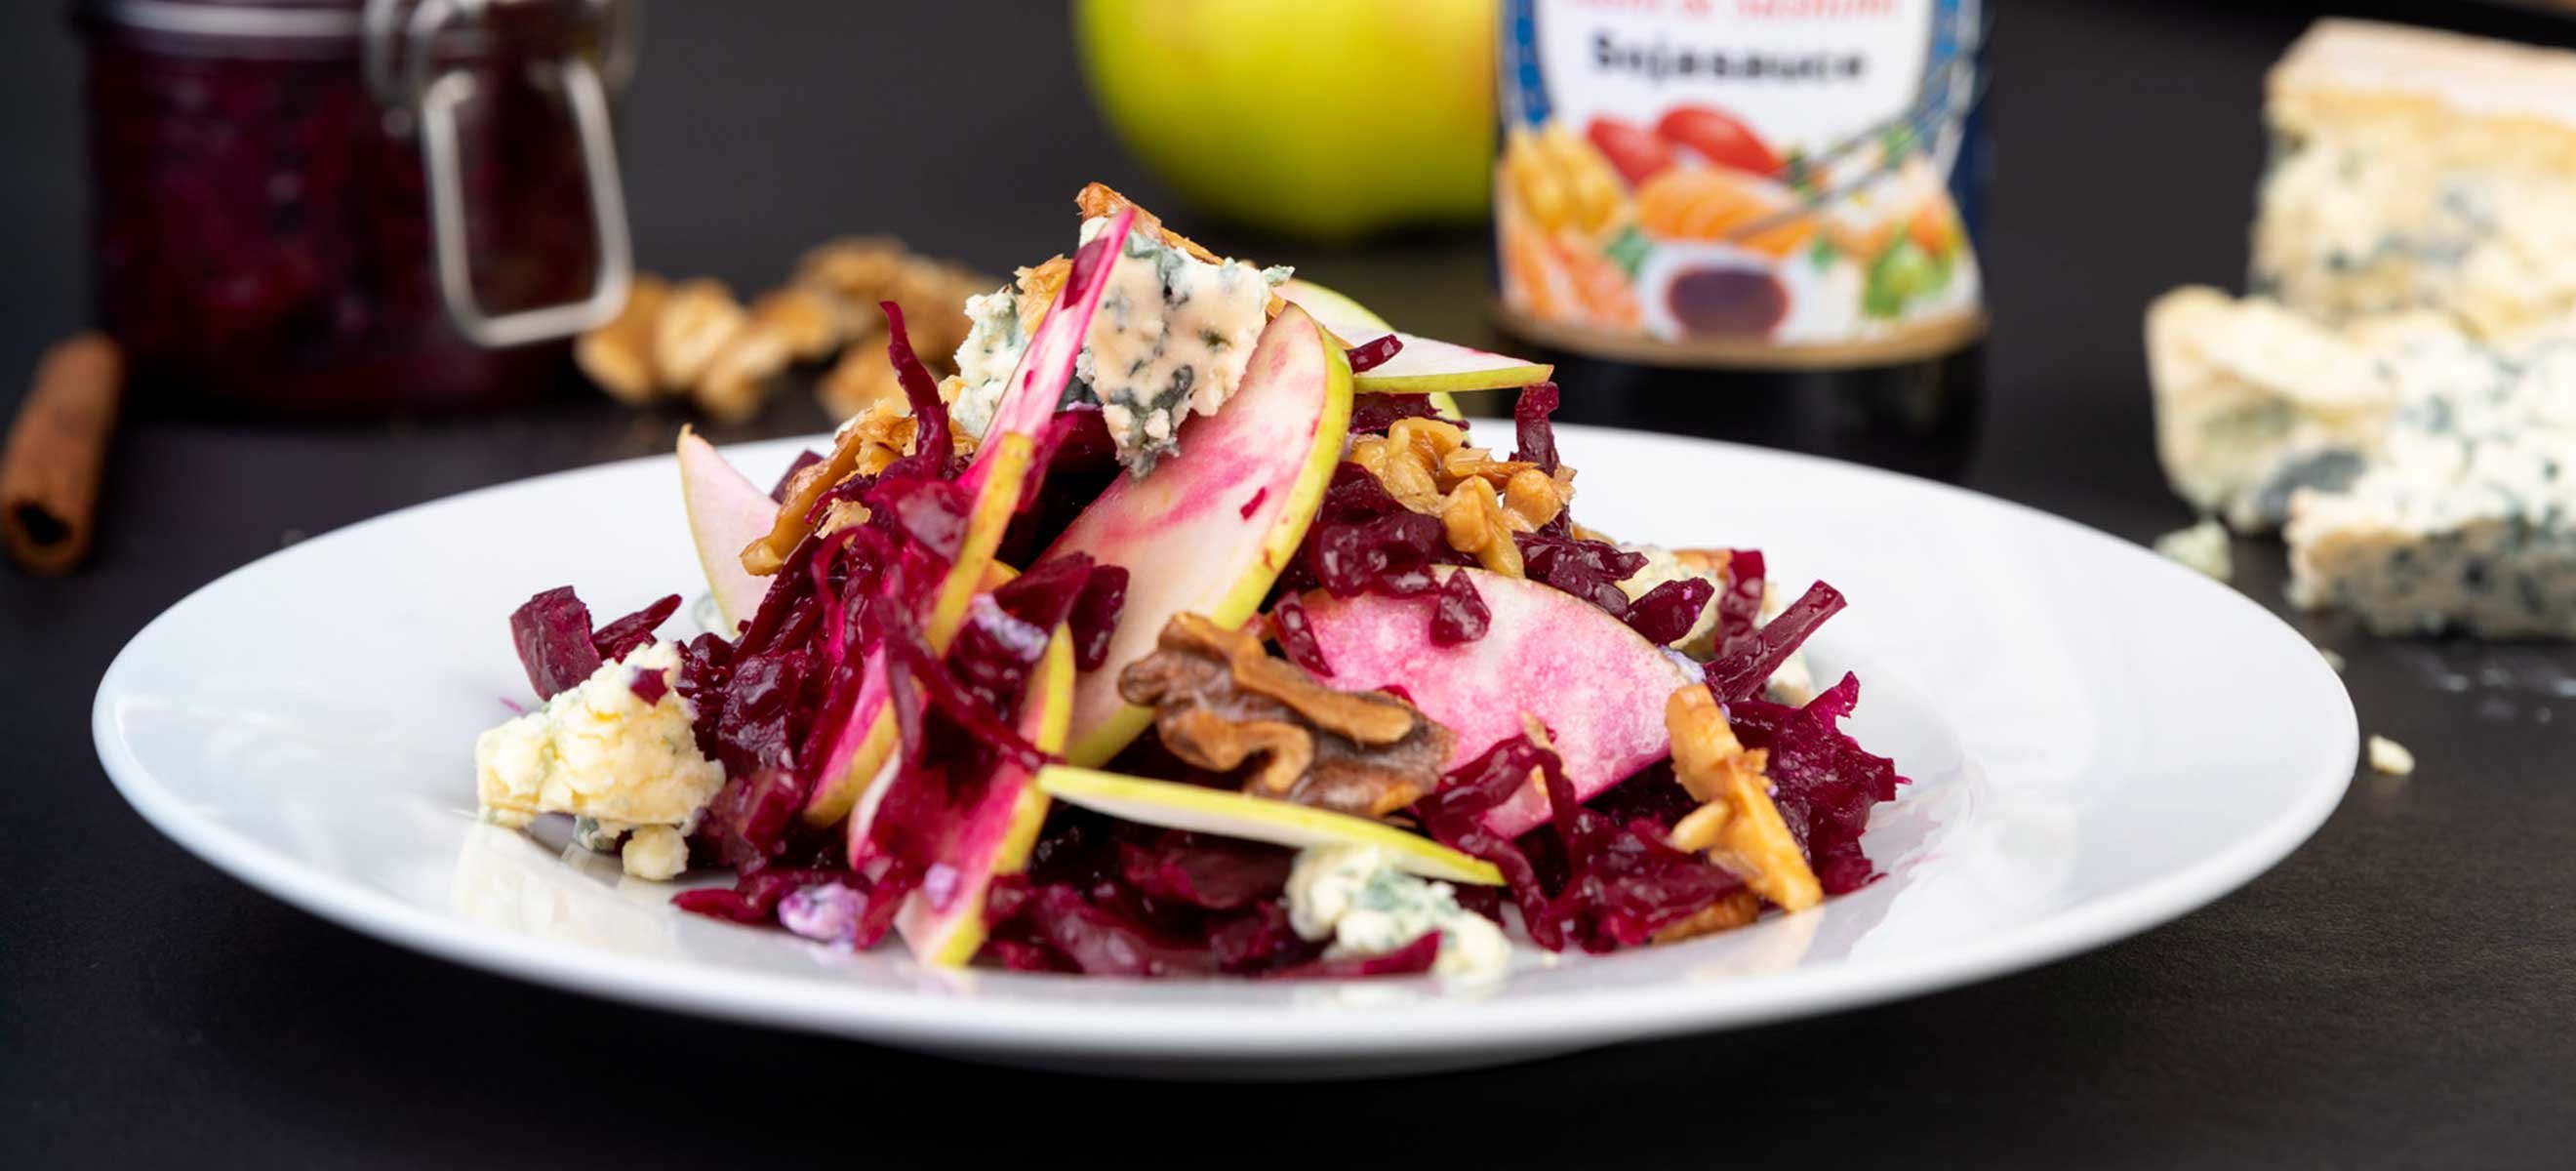 Fermentierter Rotkraut-Salat mit Walnüssen und Blauschimmelkäse - Falstaff